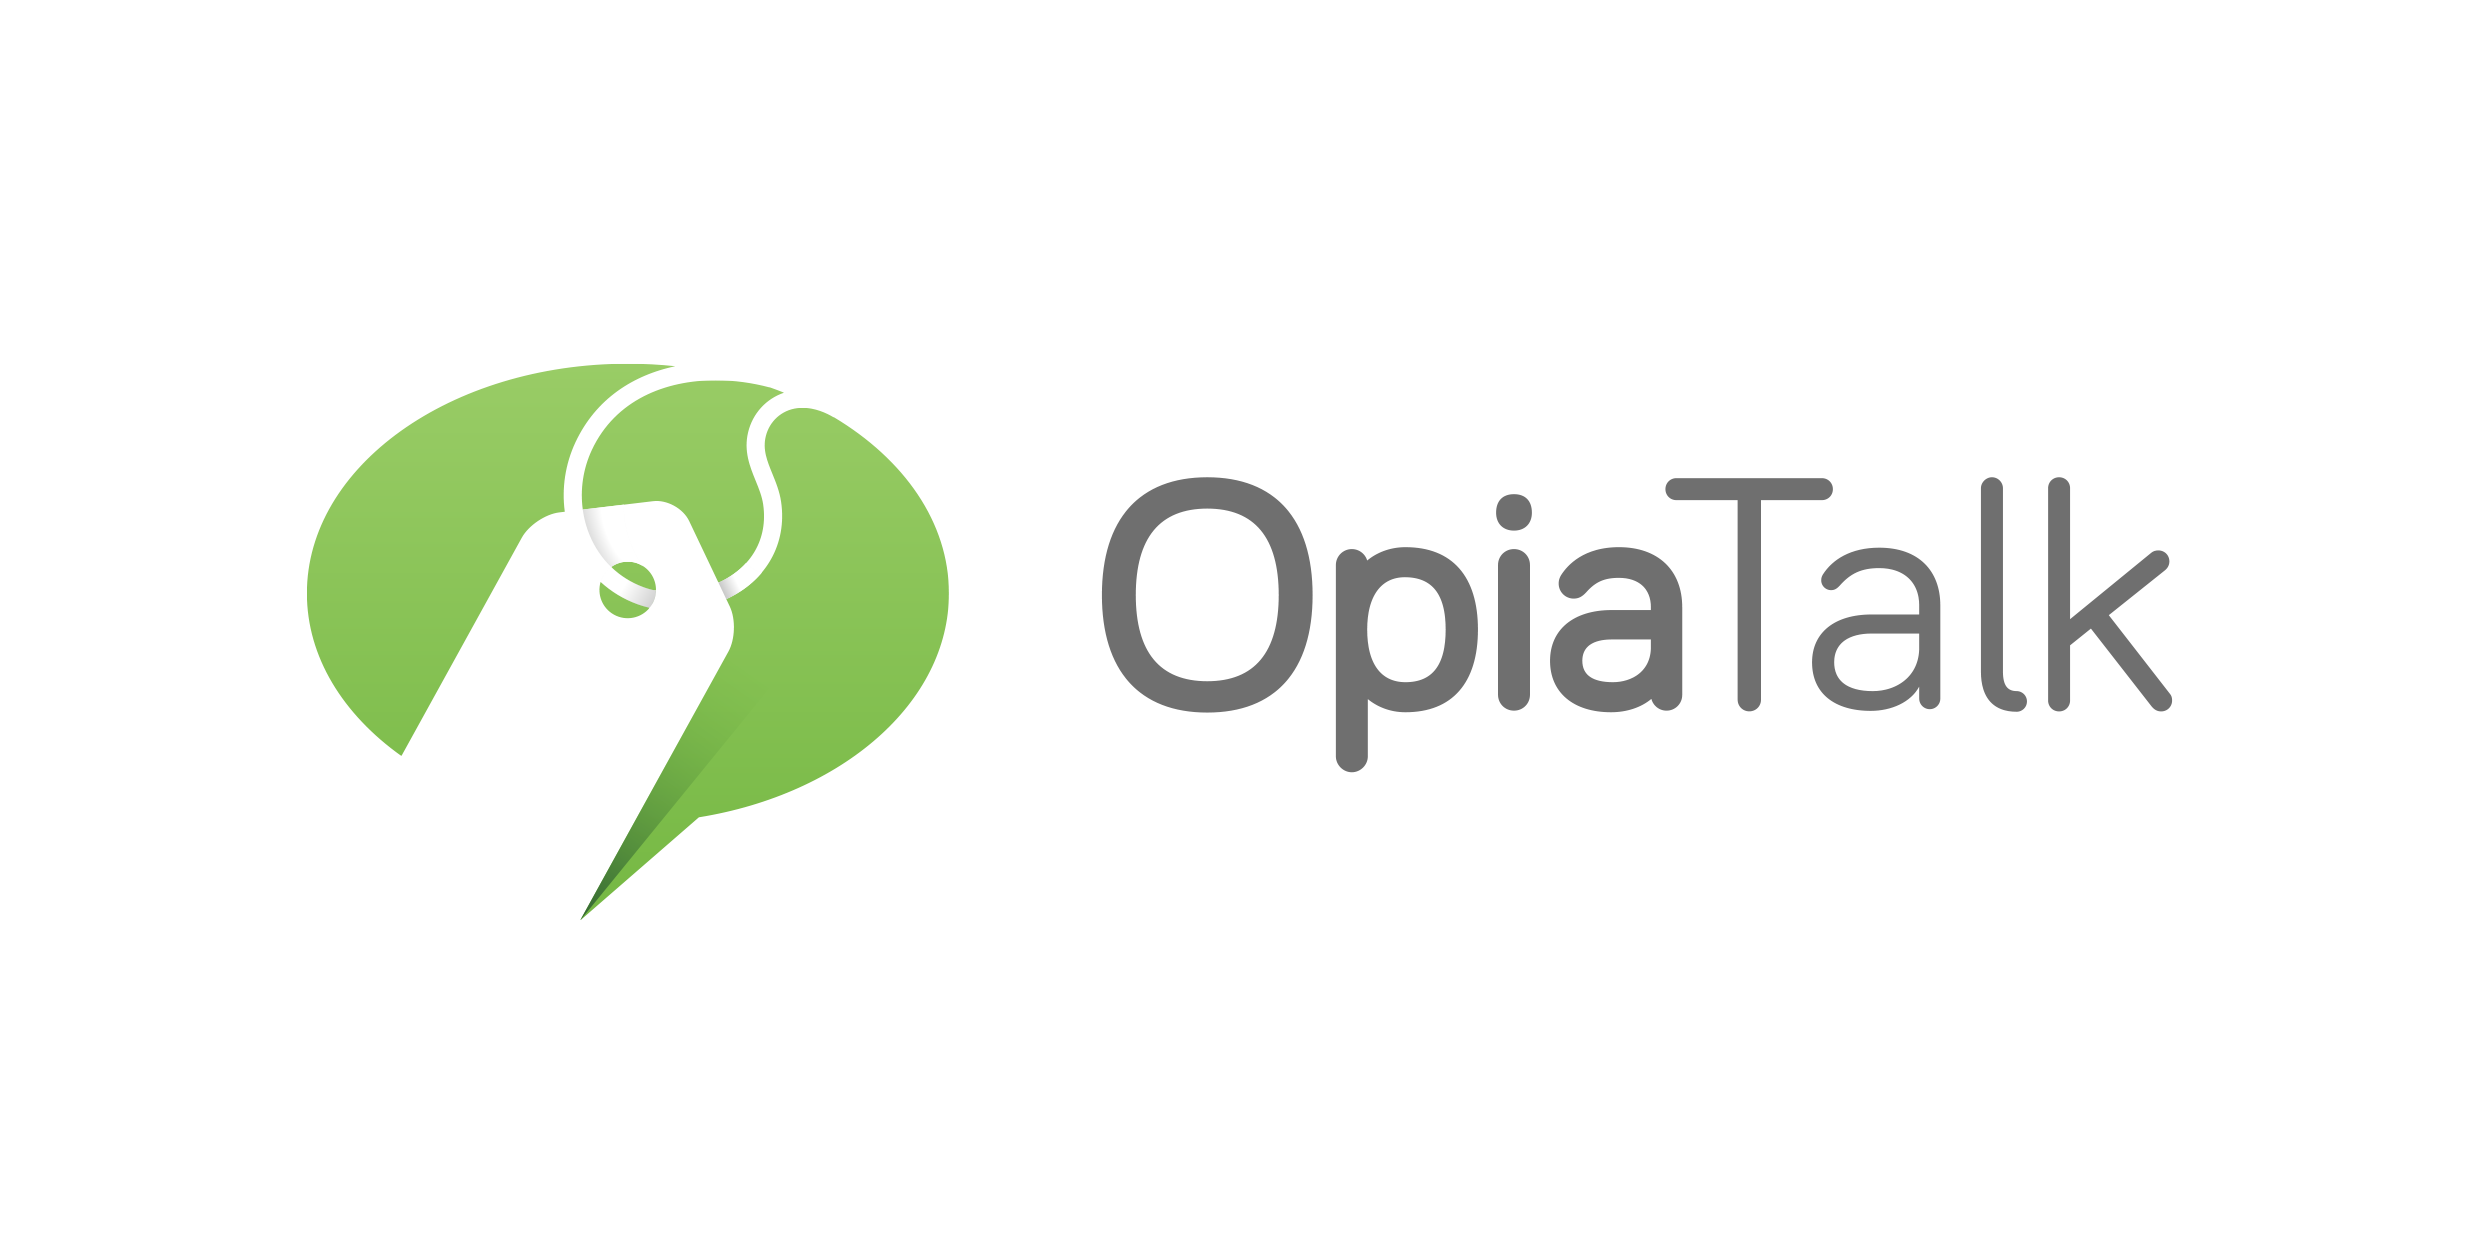 http://pressreleaseheadlines.com/wp-content/Cimy_User_Extra_Fields/OpiaTalk/OpiaTalk-logo.png